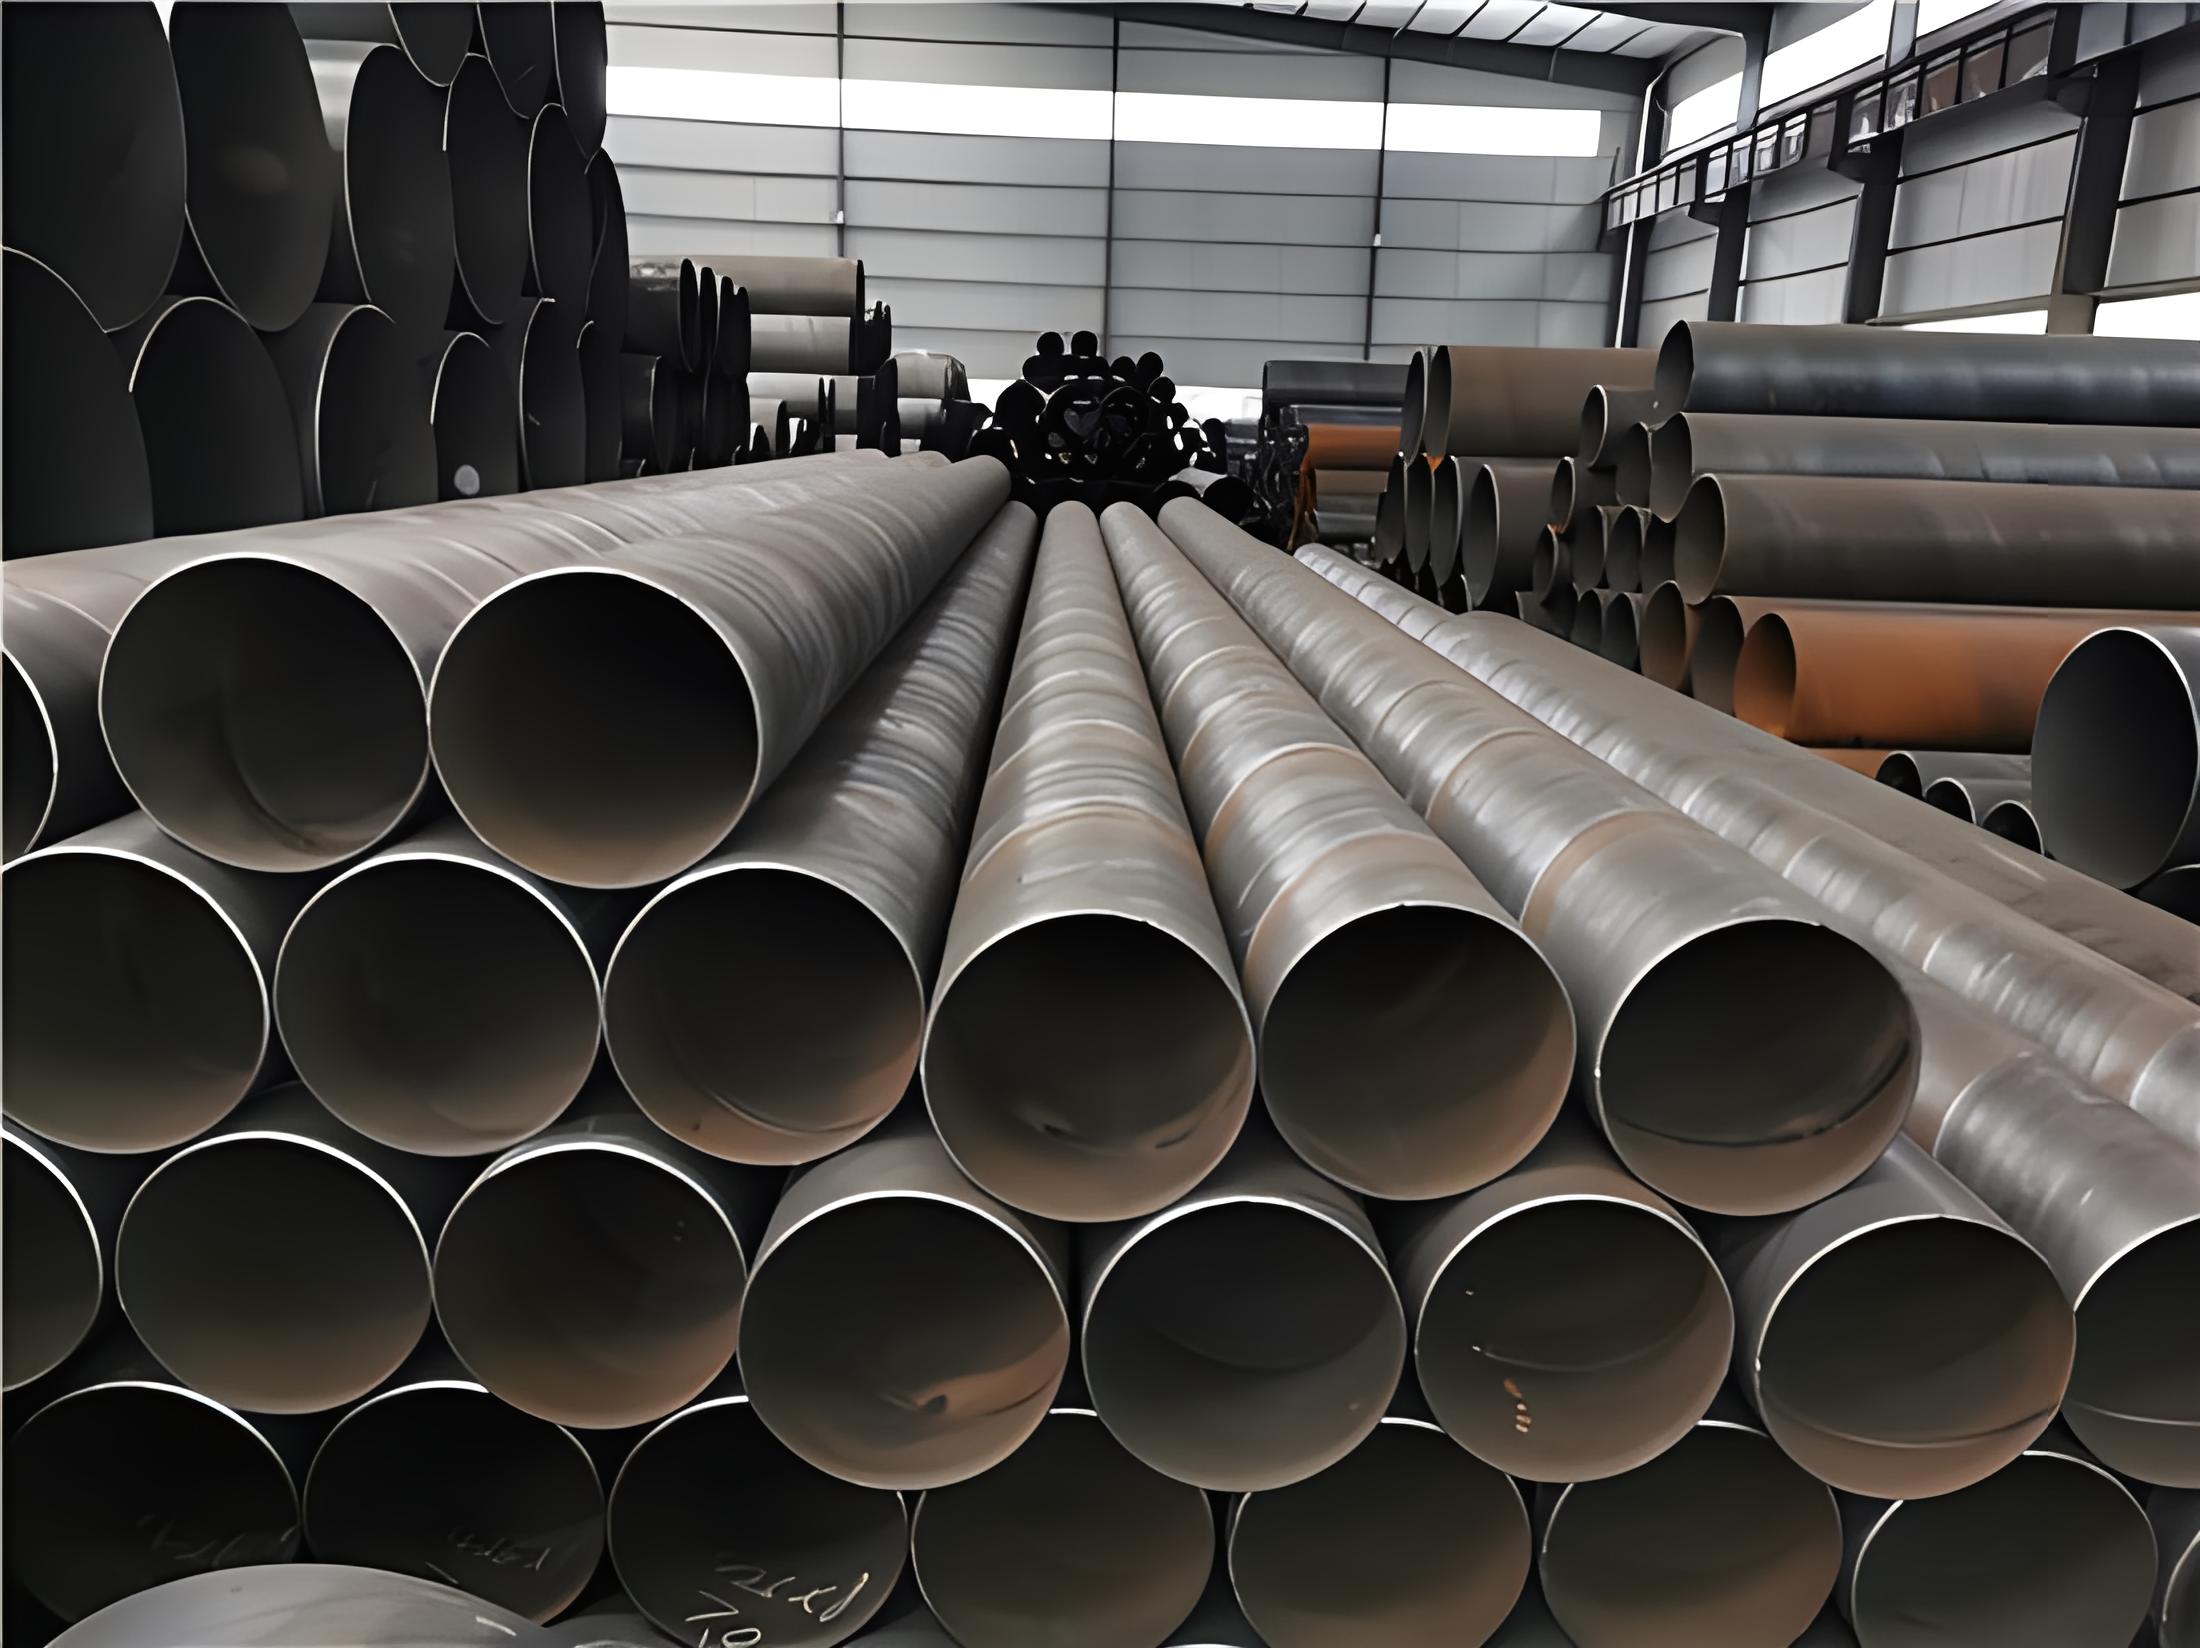 乌海螺旋钢管现代工业建设的坚实基石